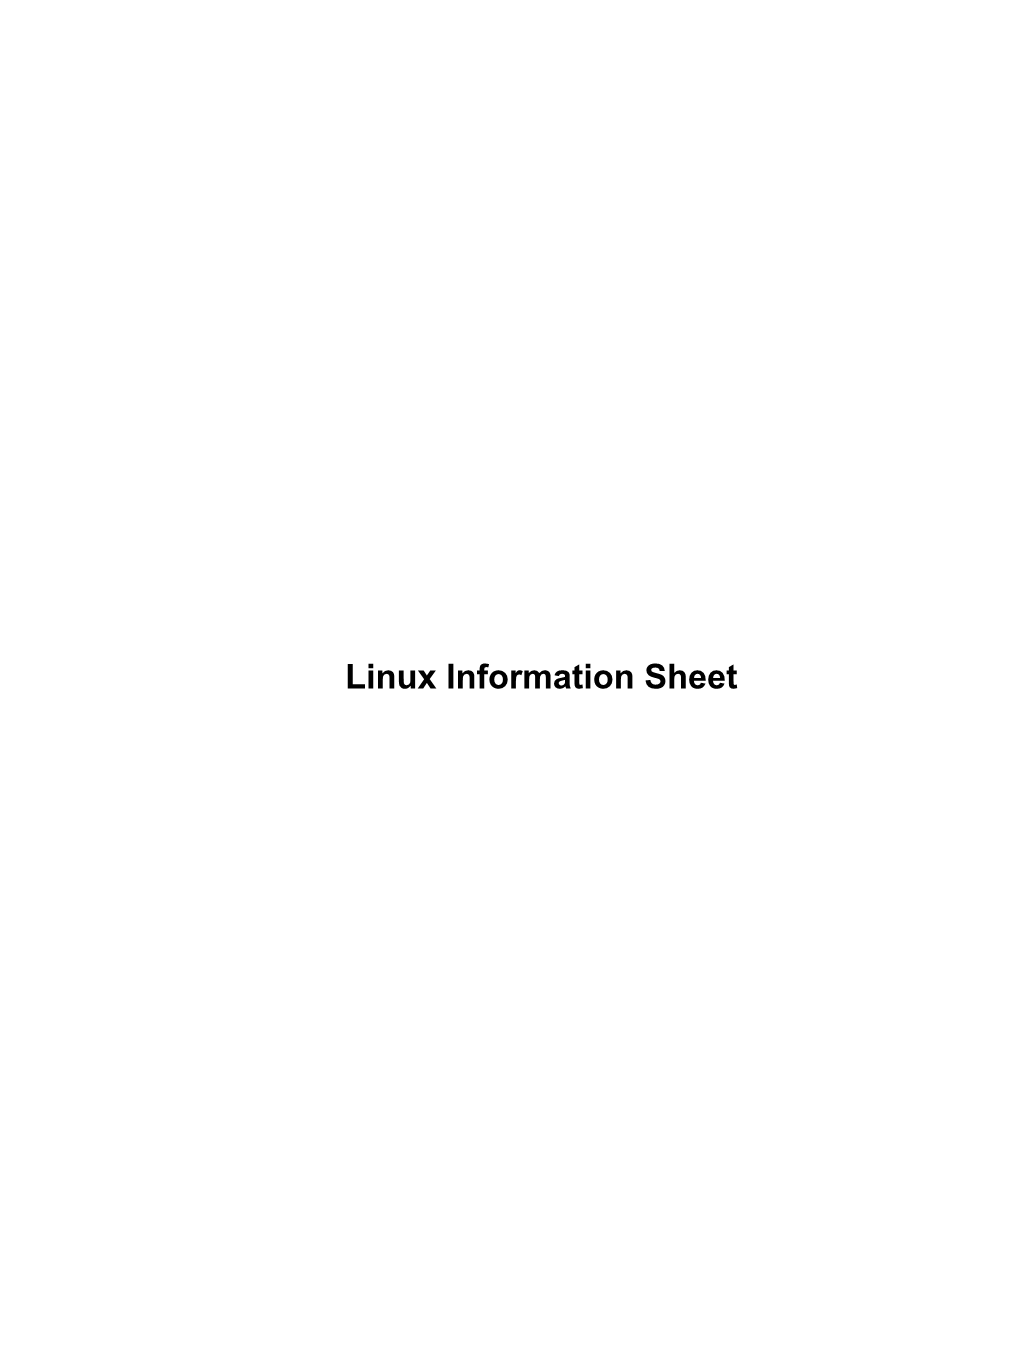 Linux Information Sheet Linux Information Sheet